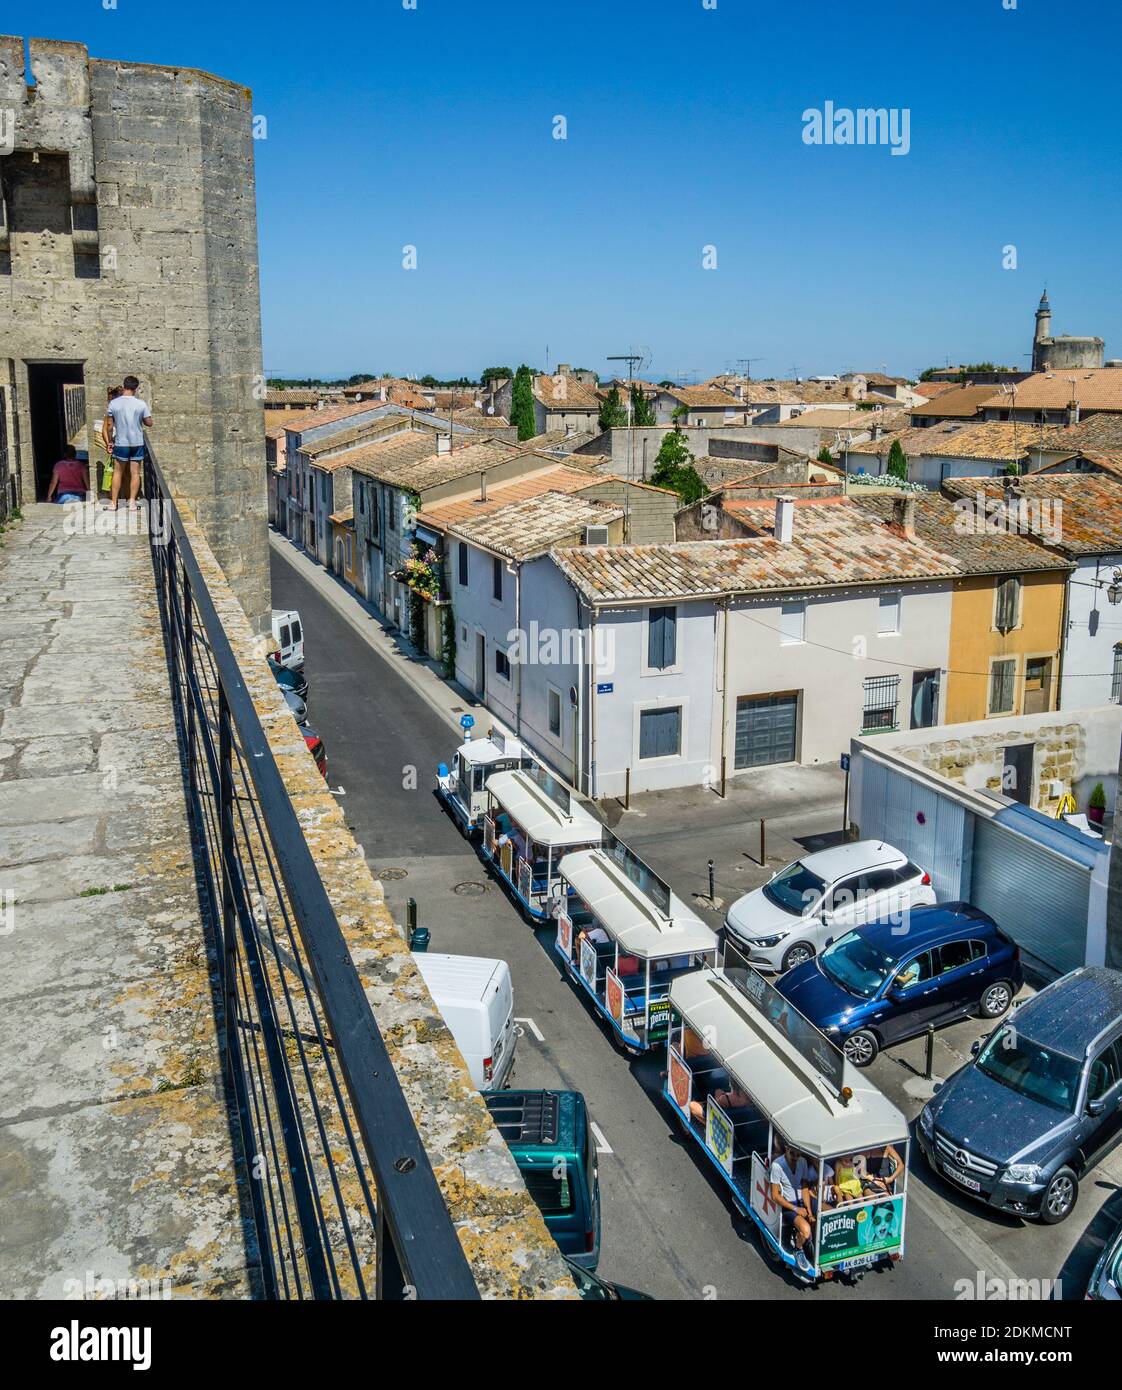 Vista desde las murallas sobre los tejados de la ciudad medieval amurallada de Aigues-Mortes, Petite Camargue, departamento de Gard, región de Occitanie, Franc Sur Foto de stock